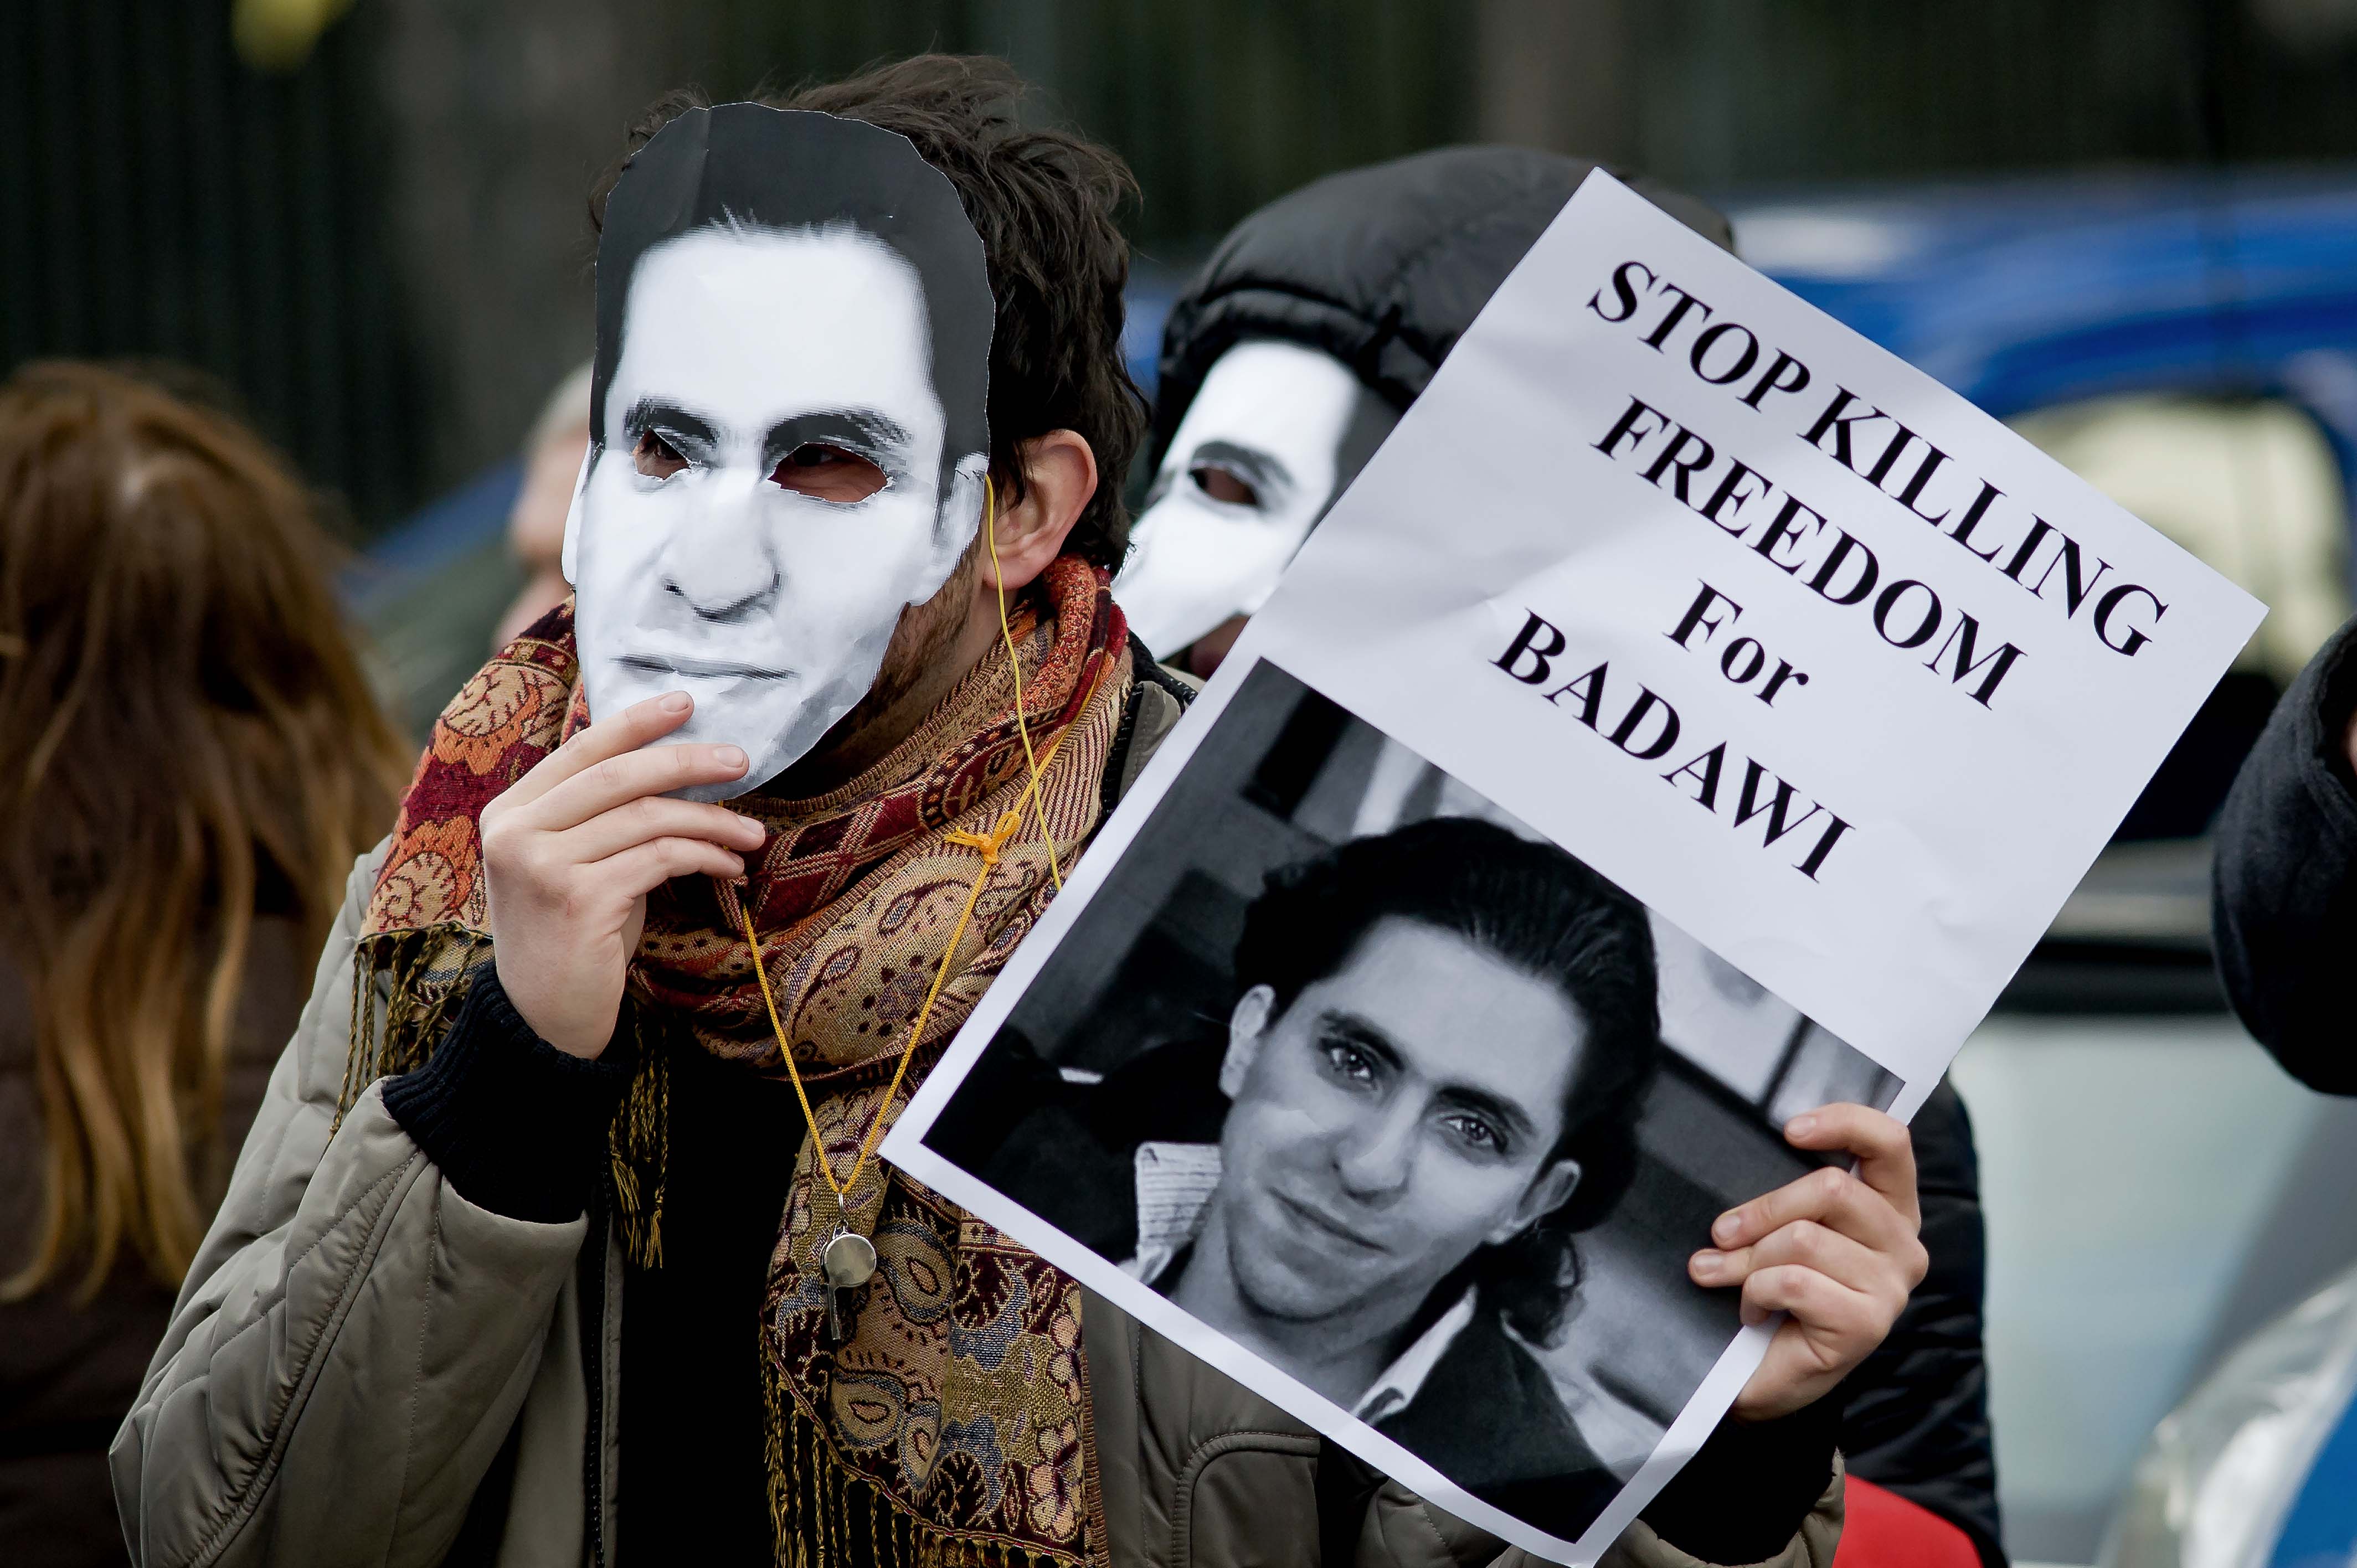 Rome, Italie. 9 Janvier 2015 - Des manifestants avec des masques de Raif Badawi à un sit-in devant l'ambassade d'Arabie saoudite pour protester contre la flagellation du blagueur en exigeant sa libération immédiate. Photographie par Stefano Montesi. Copyright: Demotix